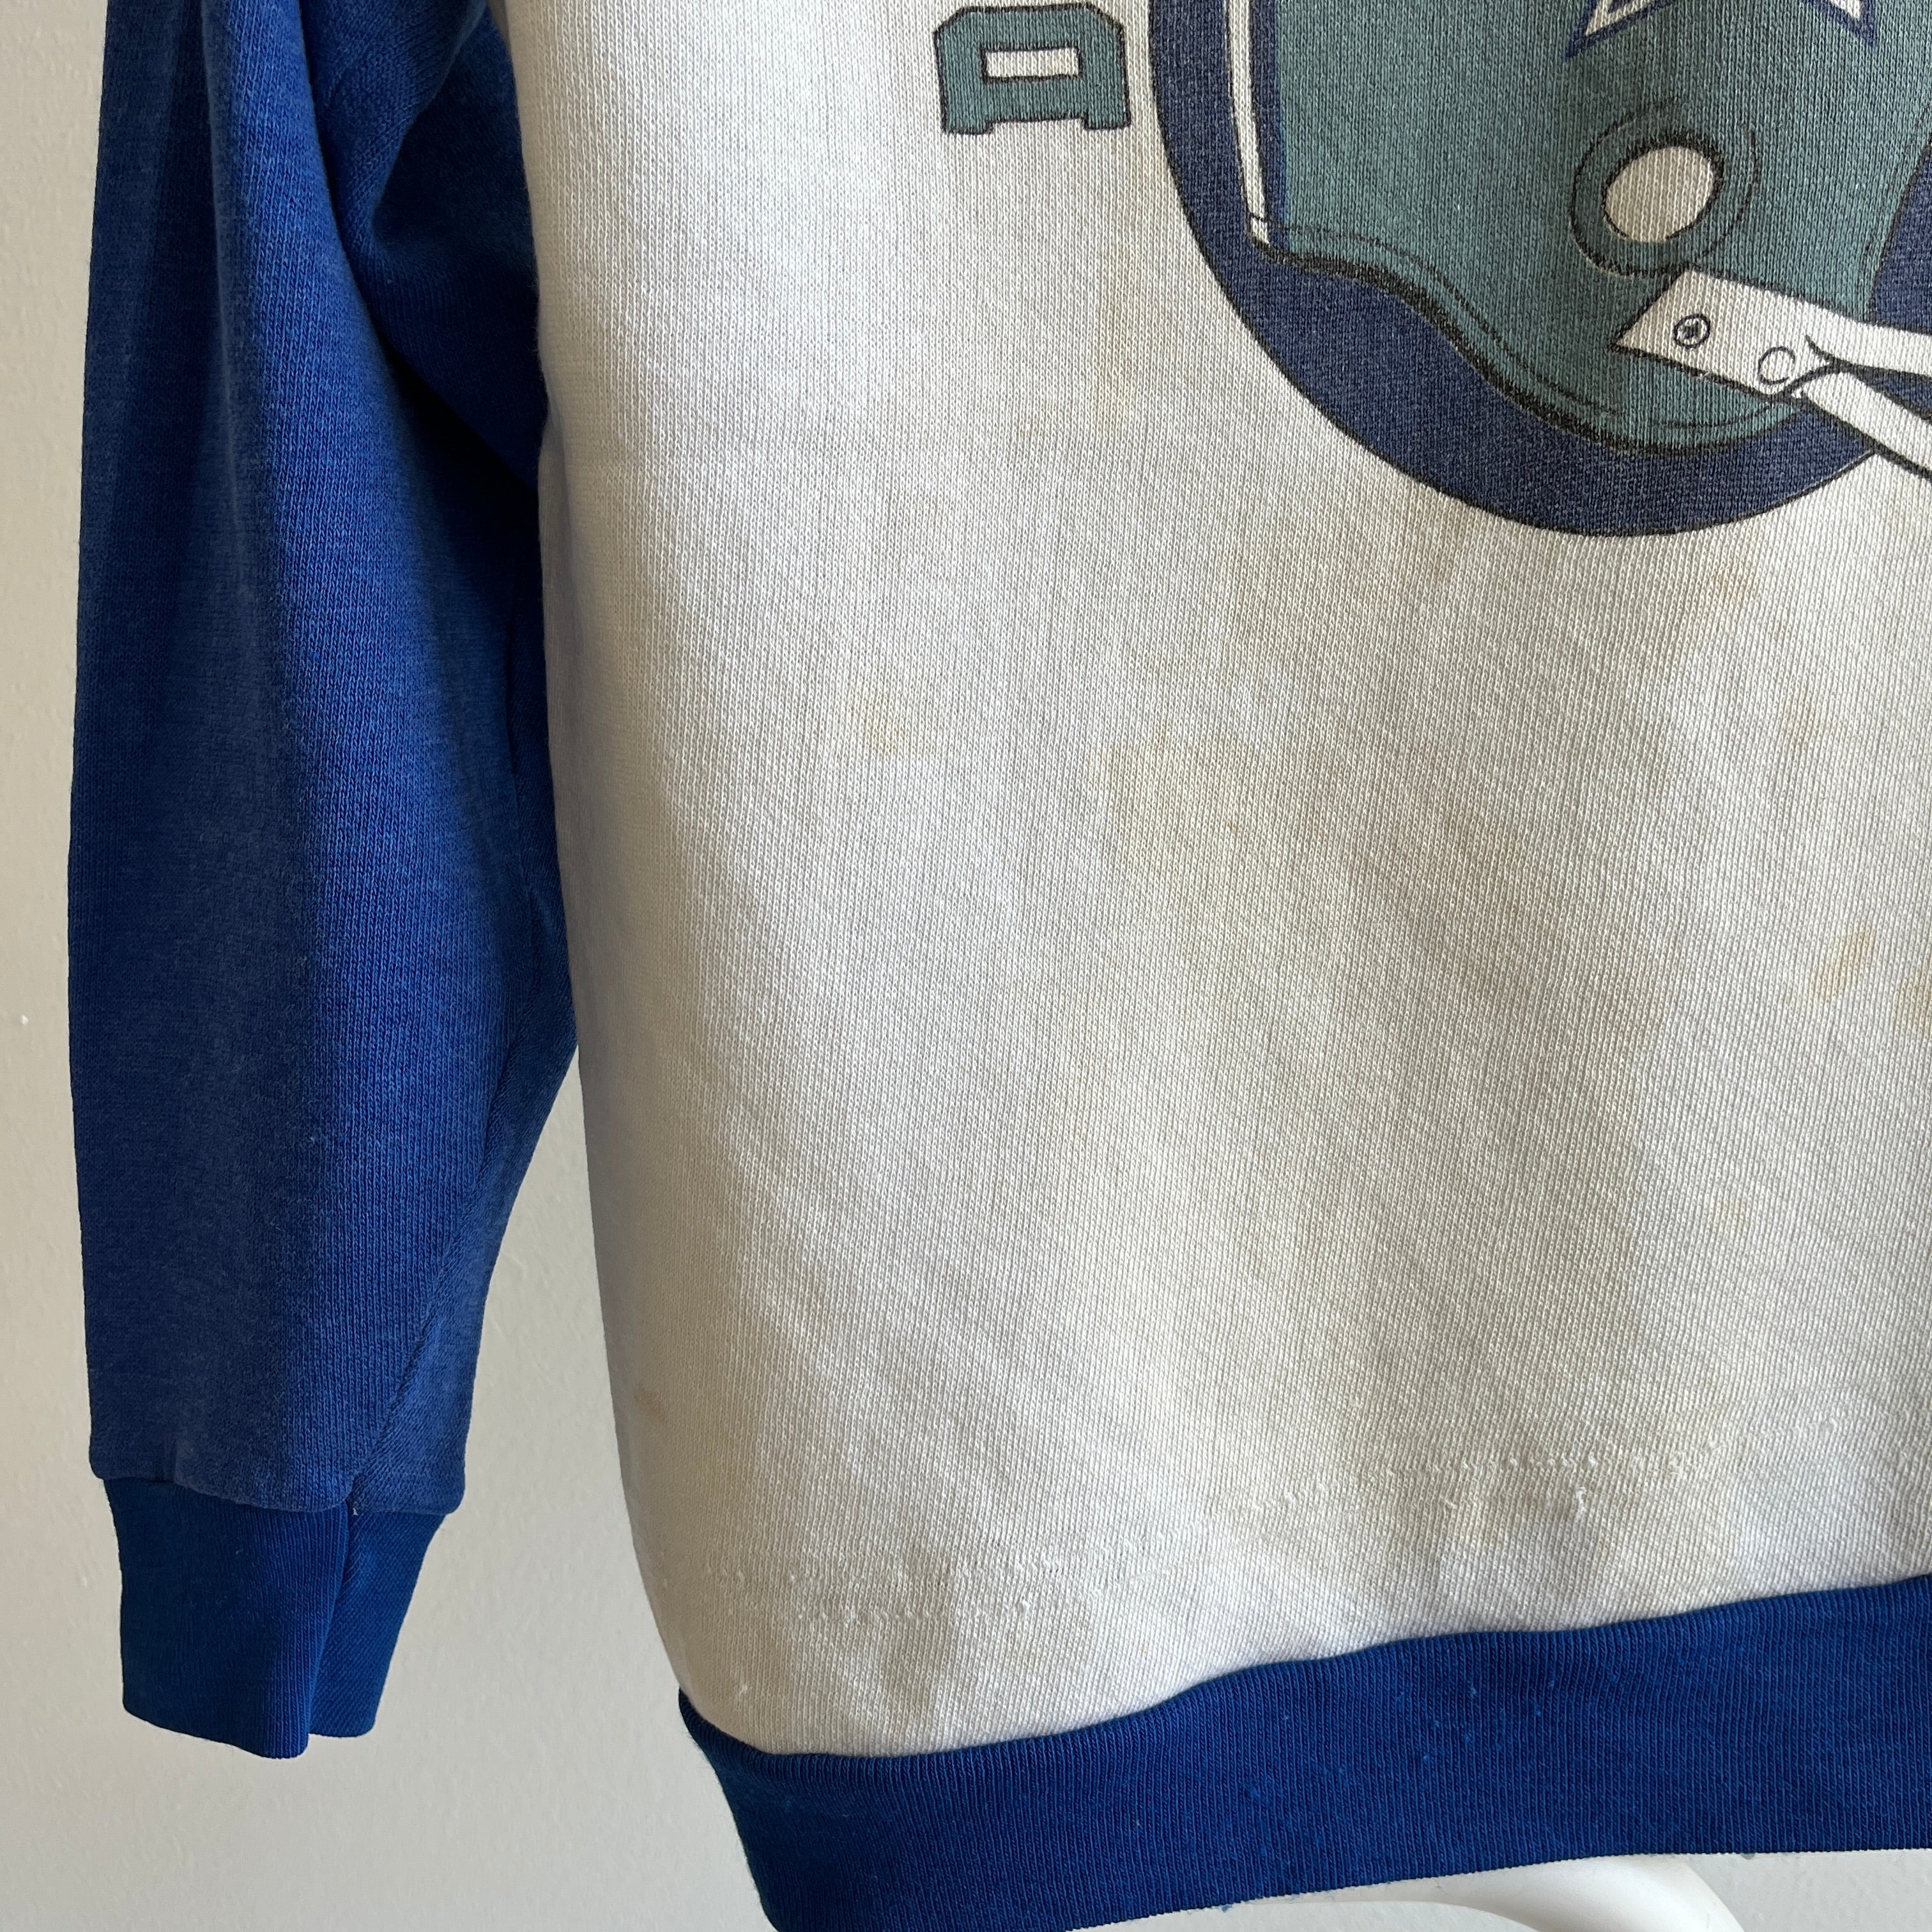 1970/80s Dallas Cowboys by Sears Sweatshirt - Smaller Size